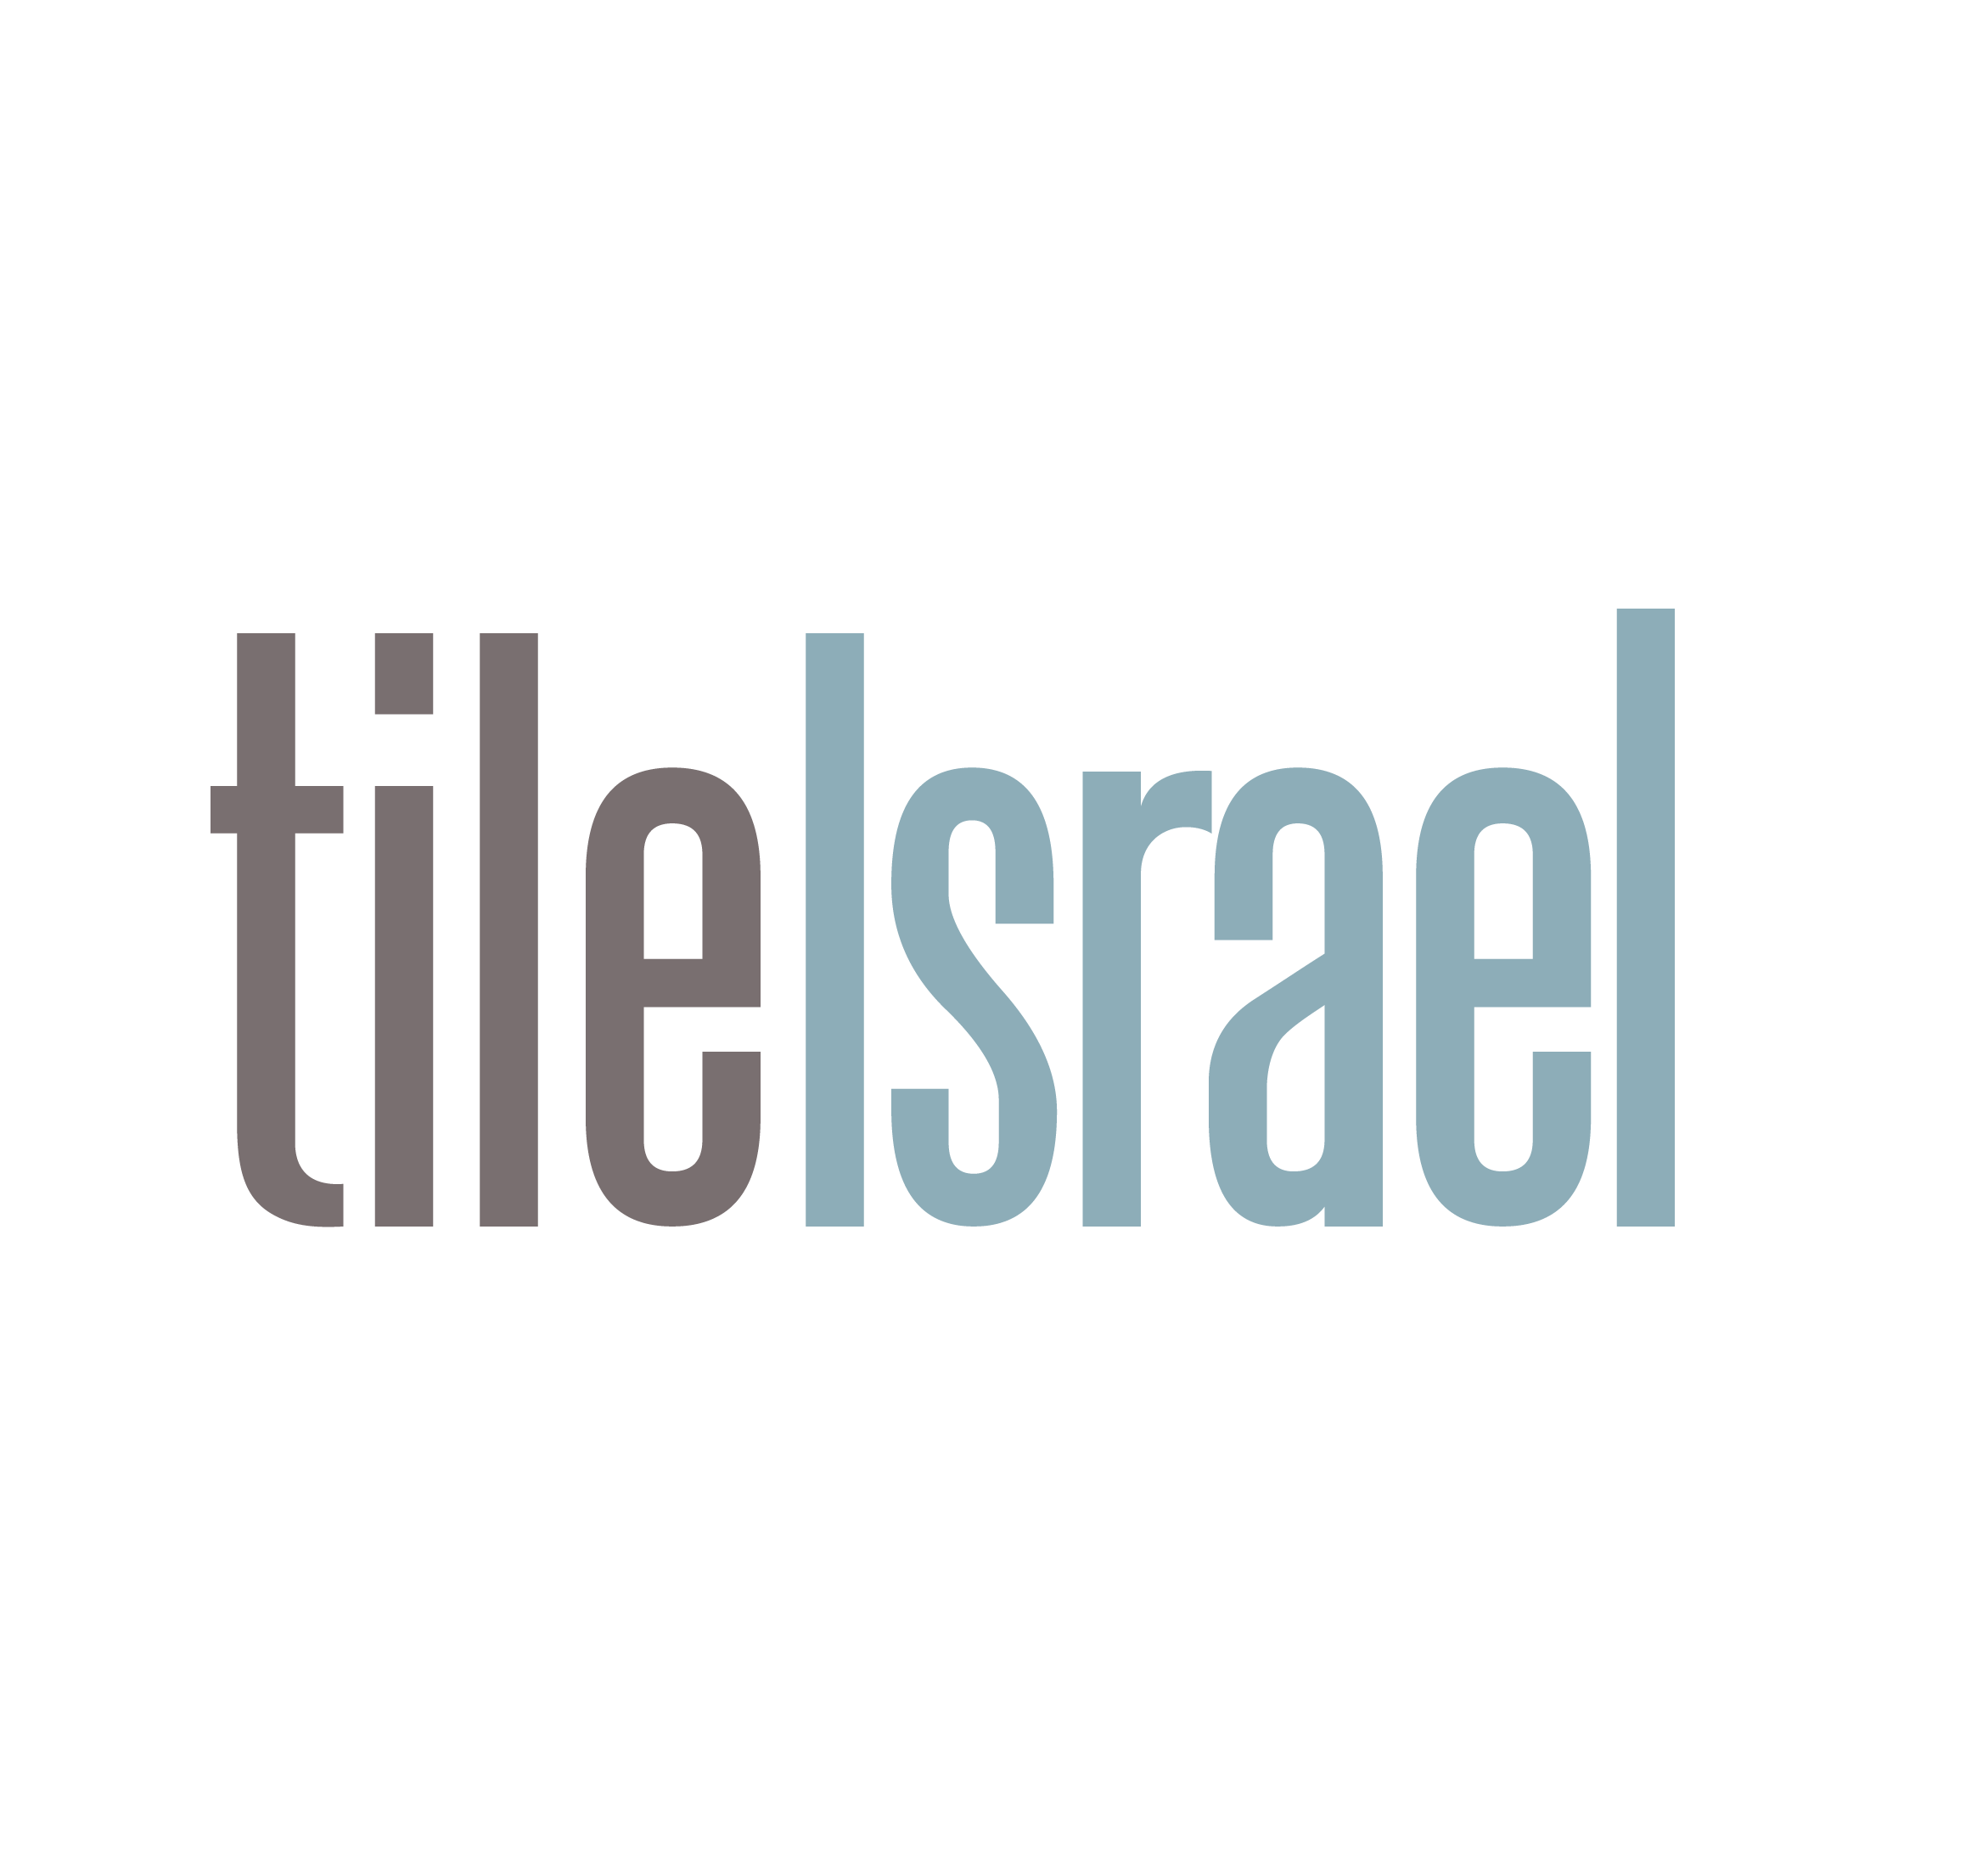   Tile Israel